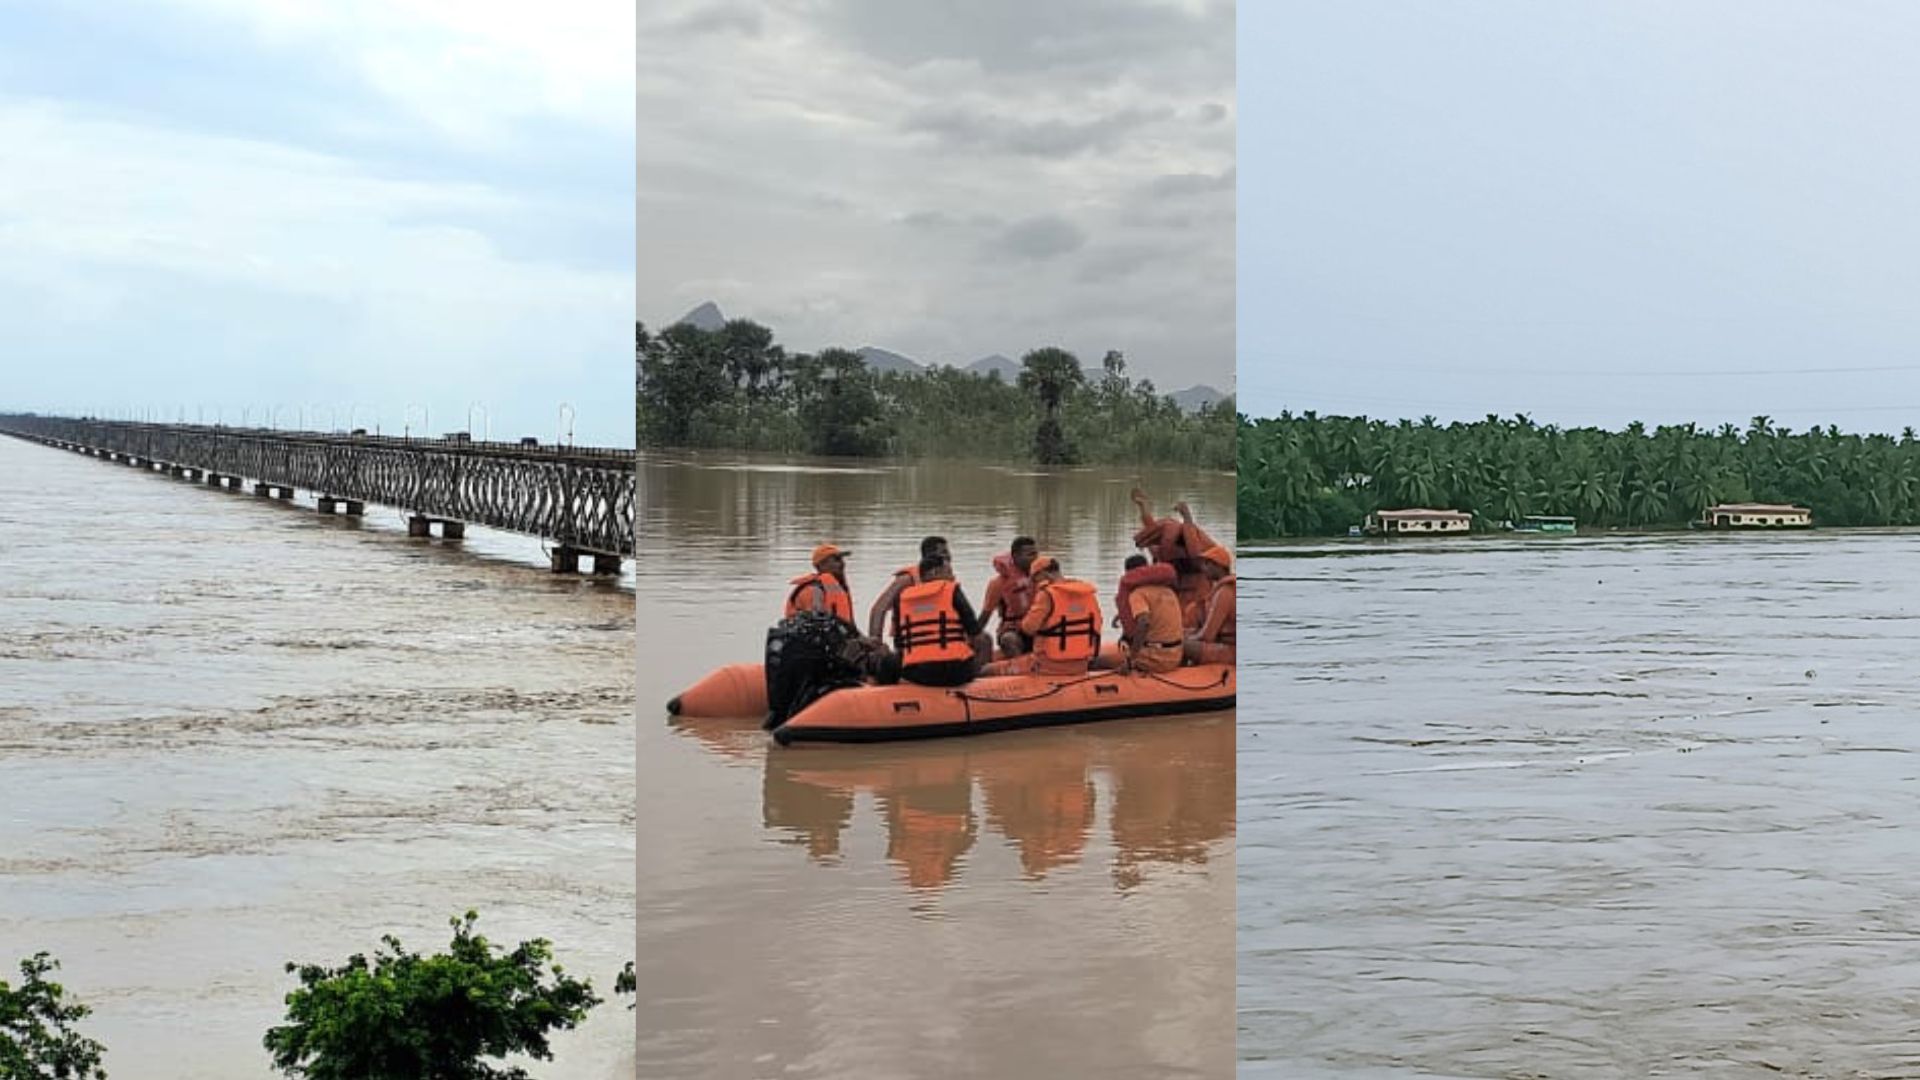 Godavari Floods తగ్గుతున్న గోదావరి వరద ఉద్ధృతి, ఇంకా ముంపులోనే లంక గ్రామాలు